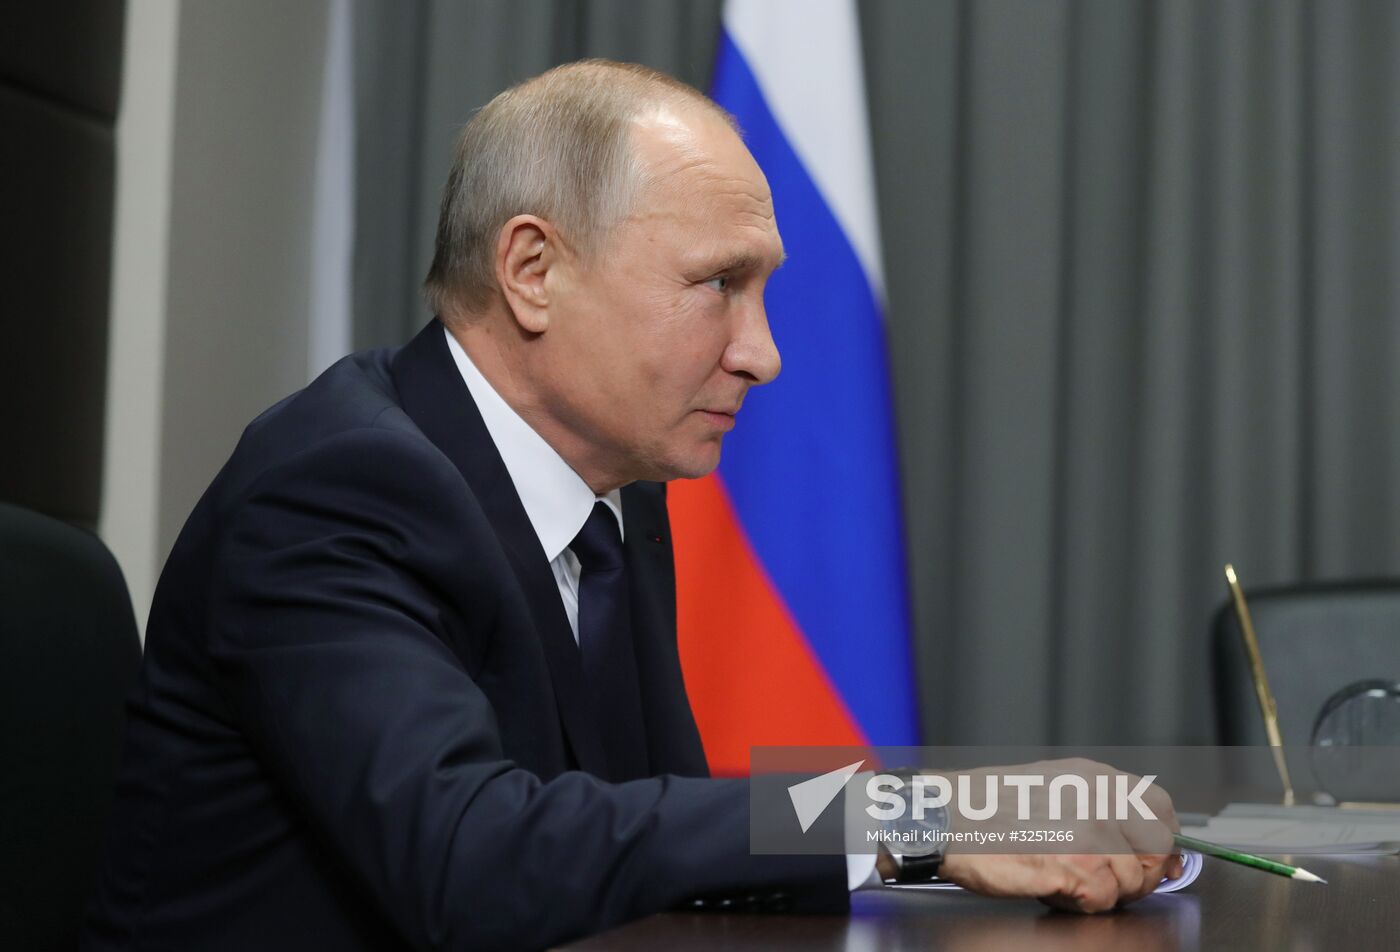 President Vladimir Putin's working visit to Nizhny Novgorod